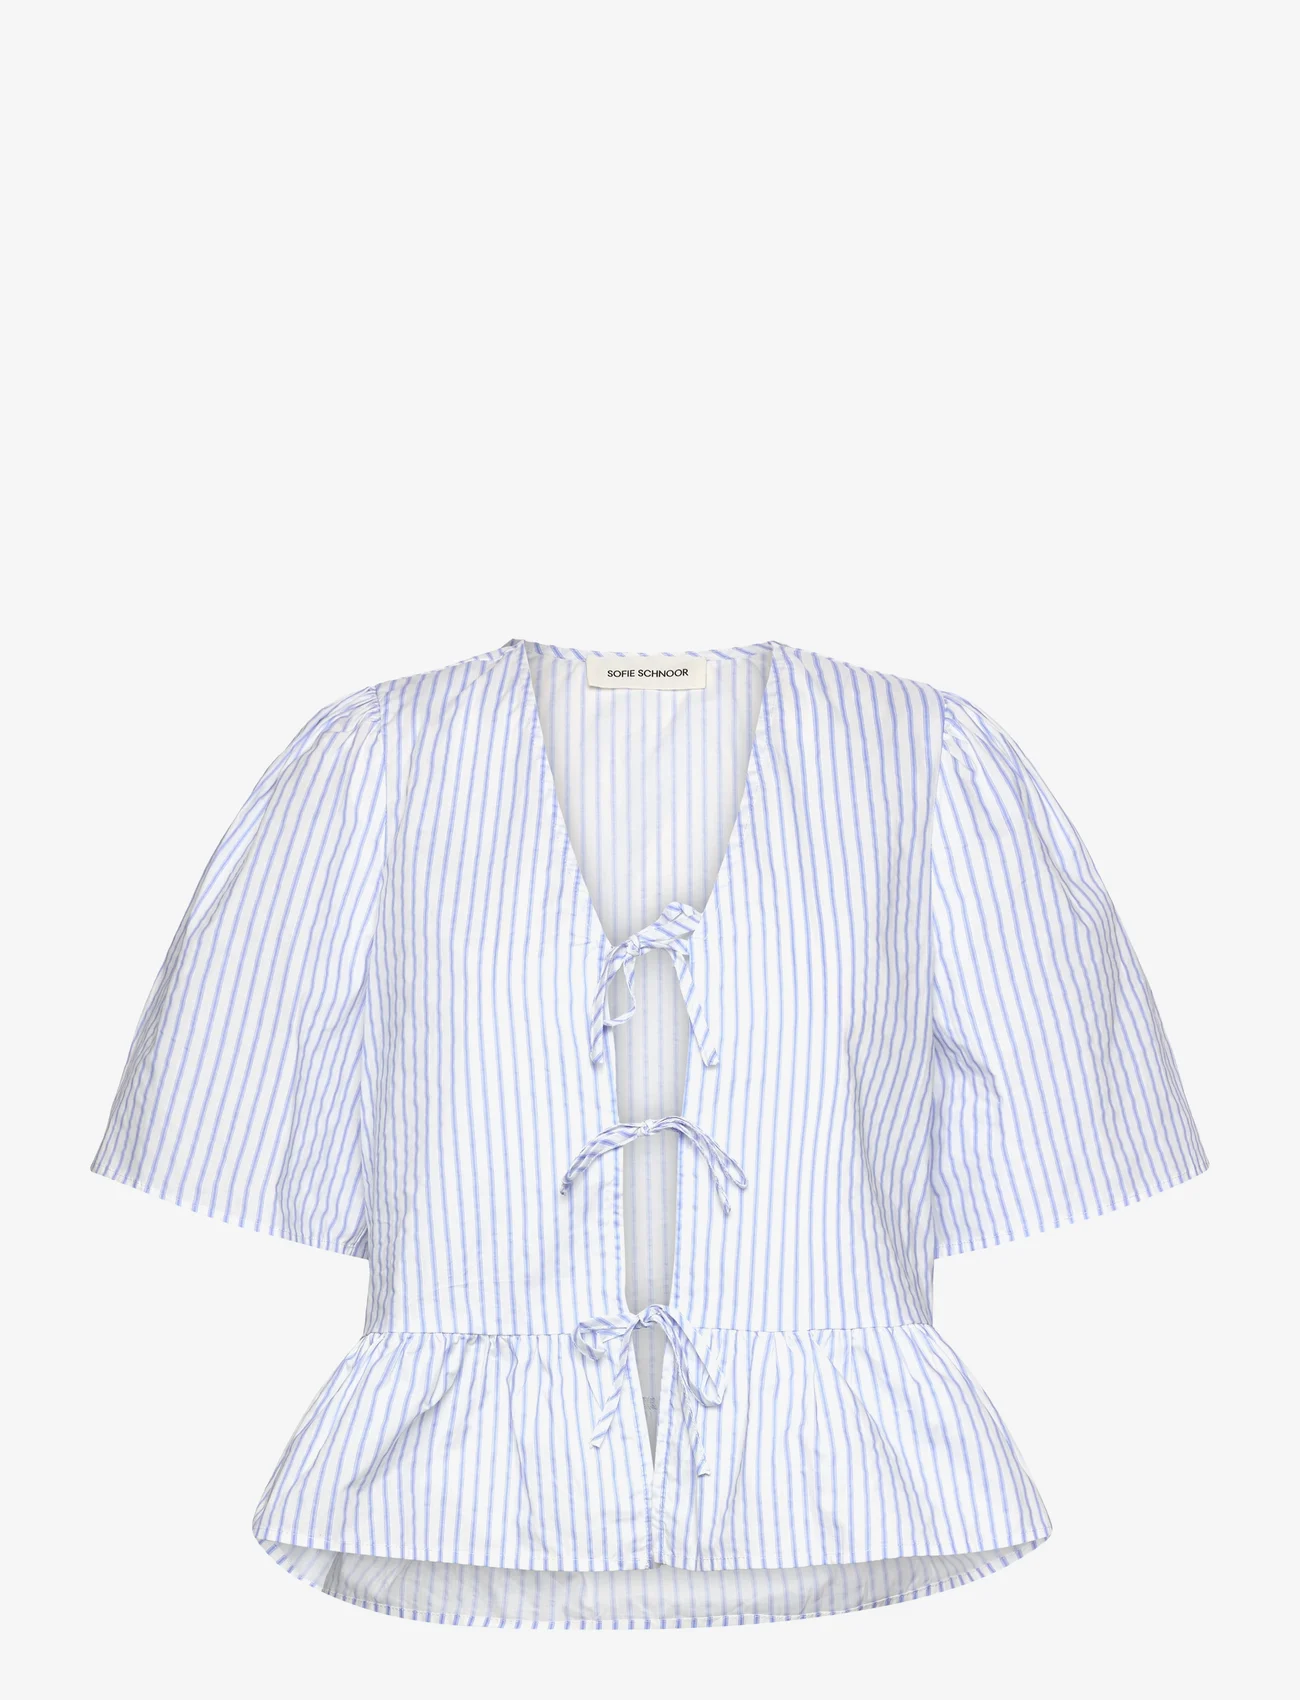 Sofie Schnoor - Shirt - kortærmede bluser - light blue striped - 0